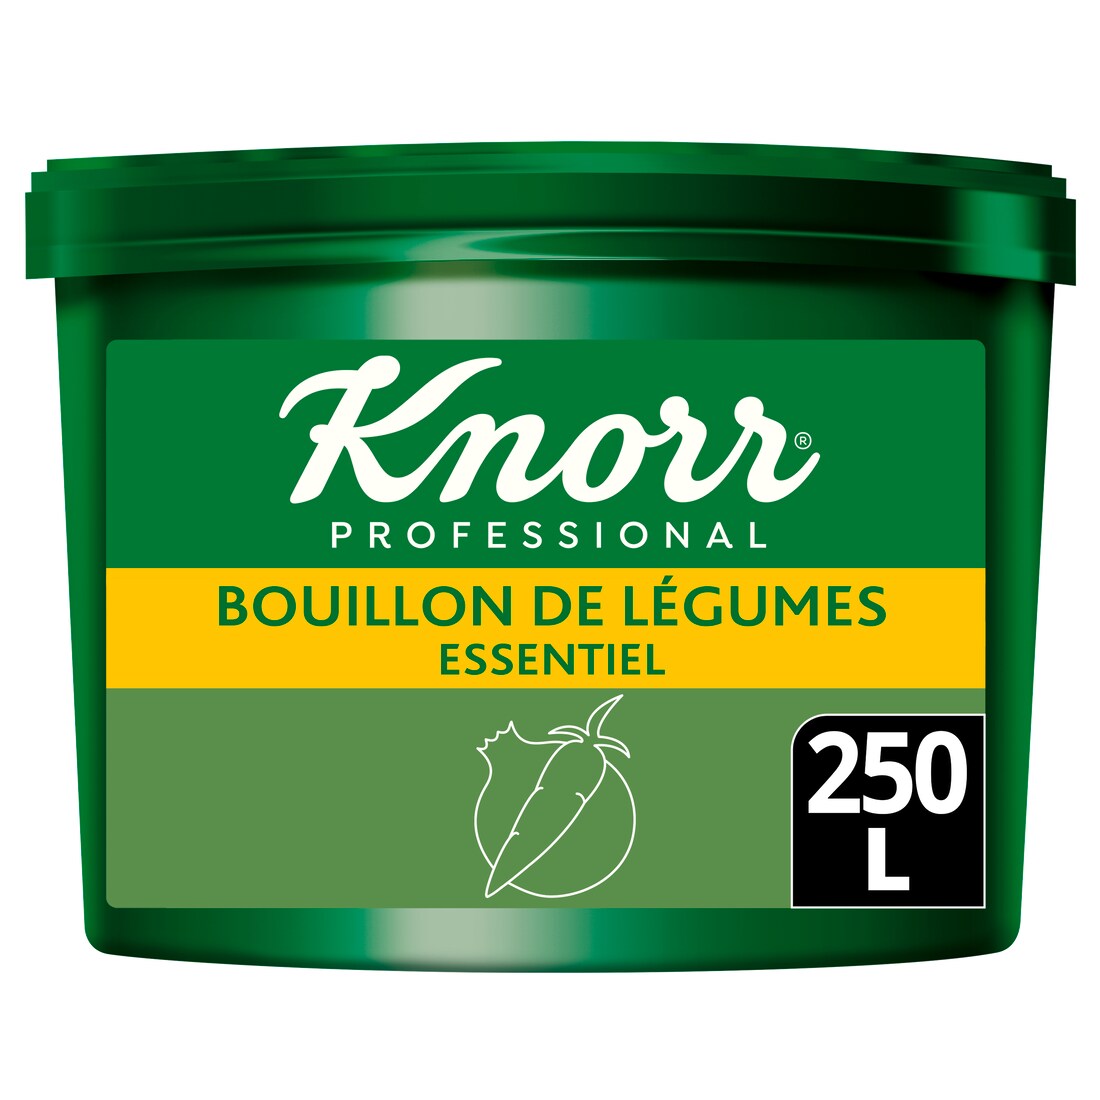 Knorr Essentiel Bouillon de Légumes 5kg jusqu'à 250L - Notre gamme vous aide à répondre aux besoins de vos convives